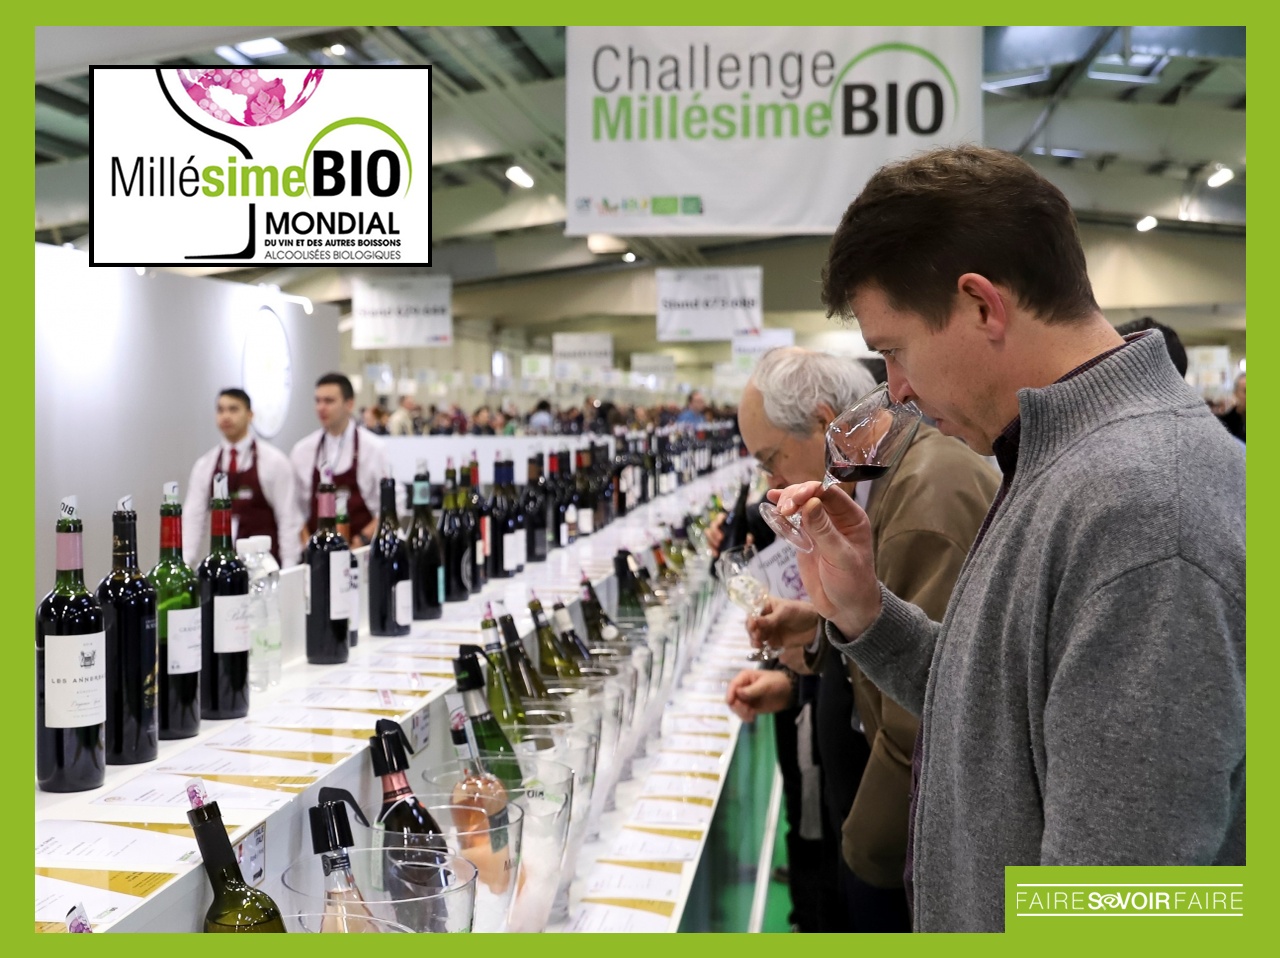 Millésime Bio, salon mondial des boissons alcoolisées biologiques, de retour à Montpellier